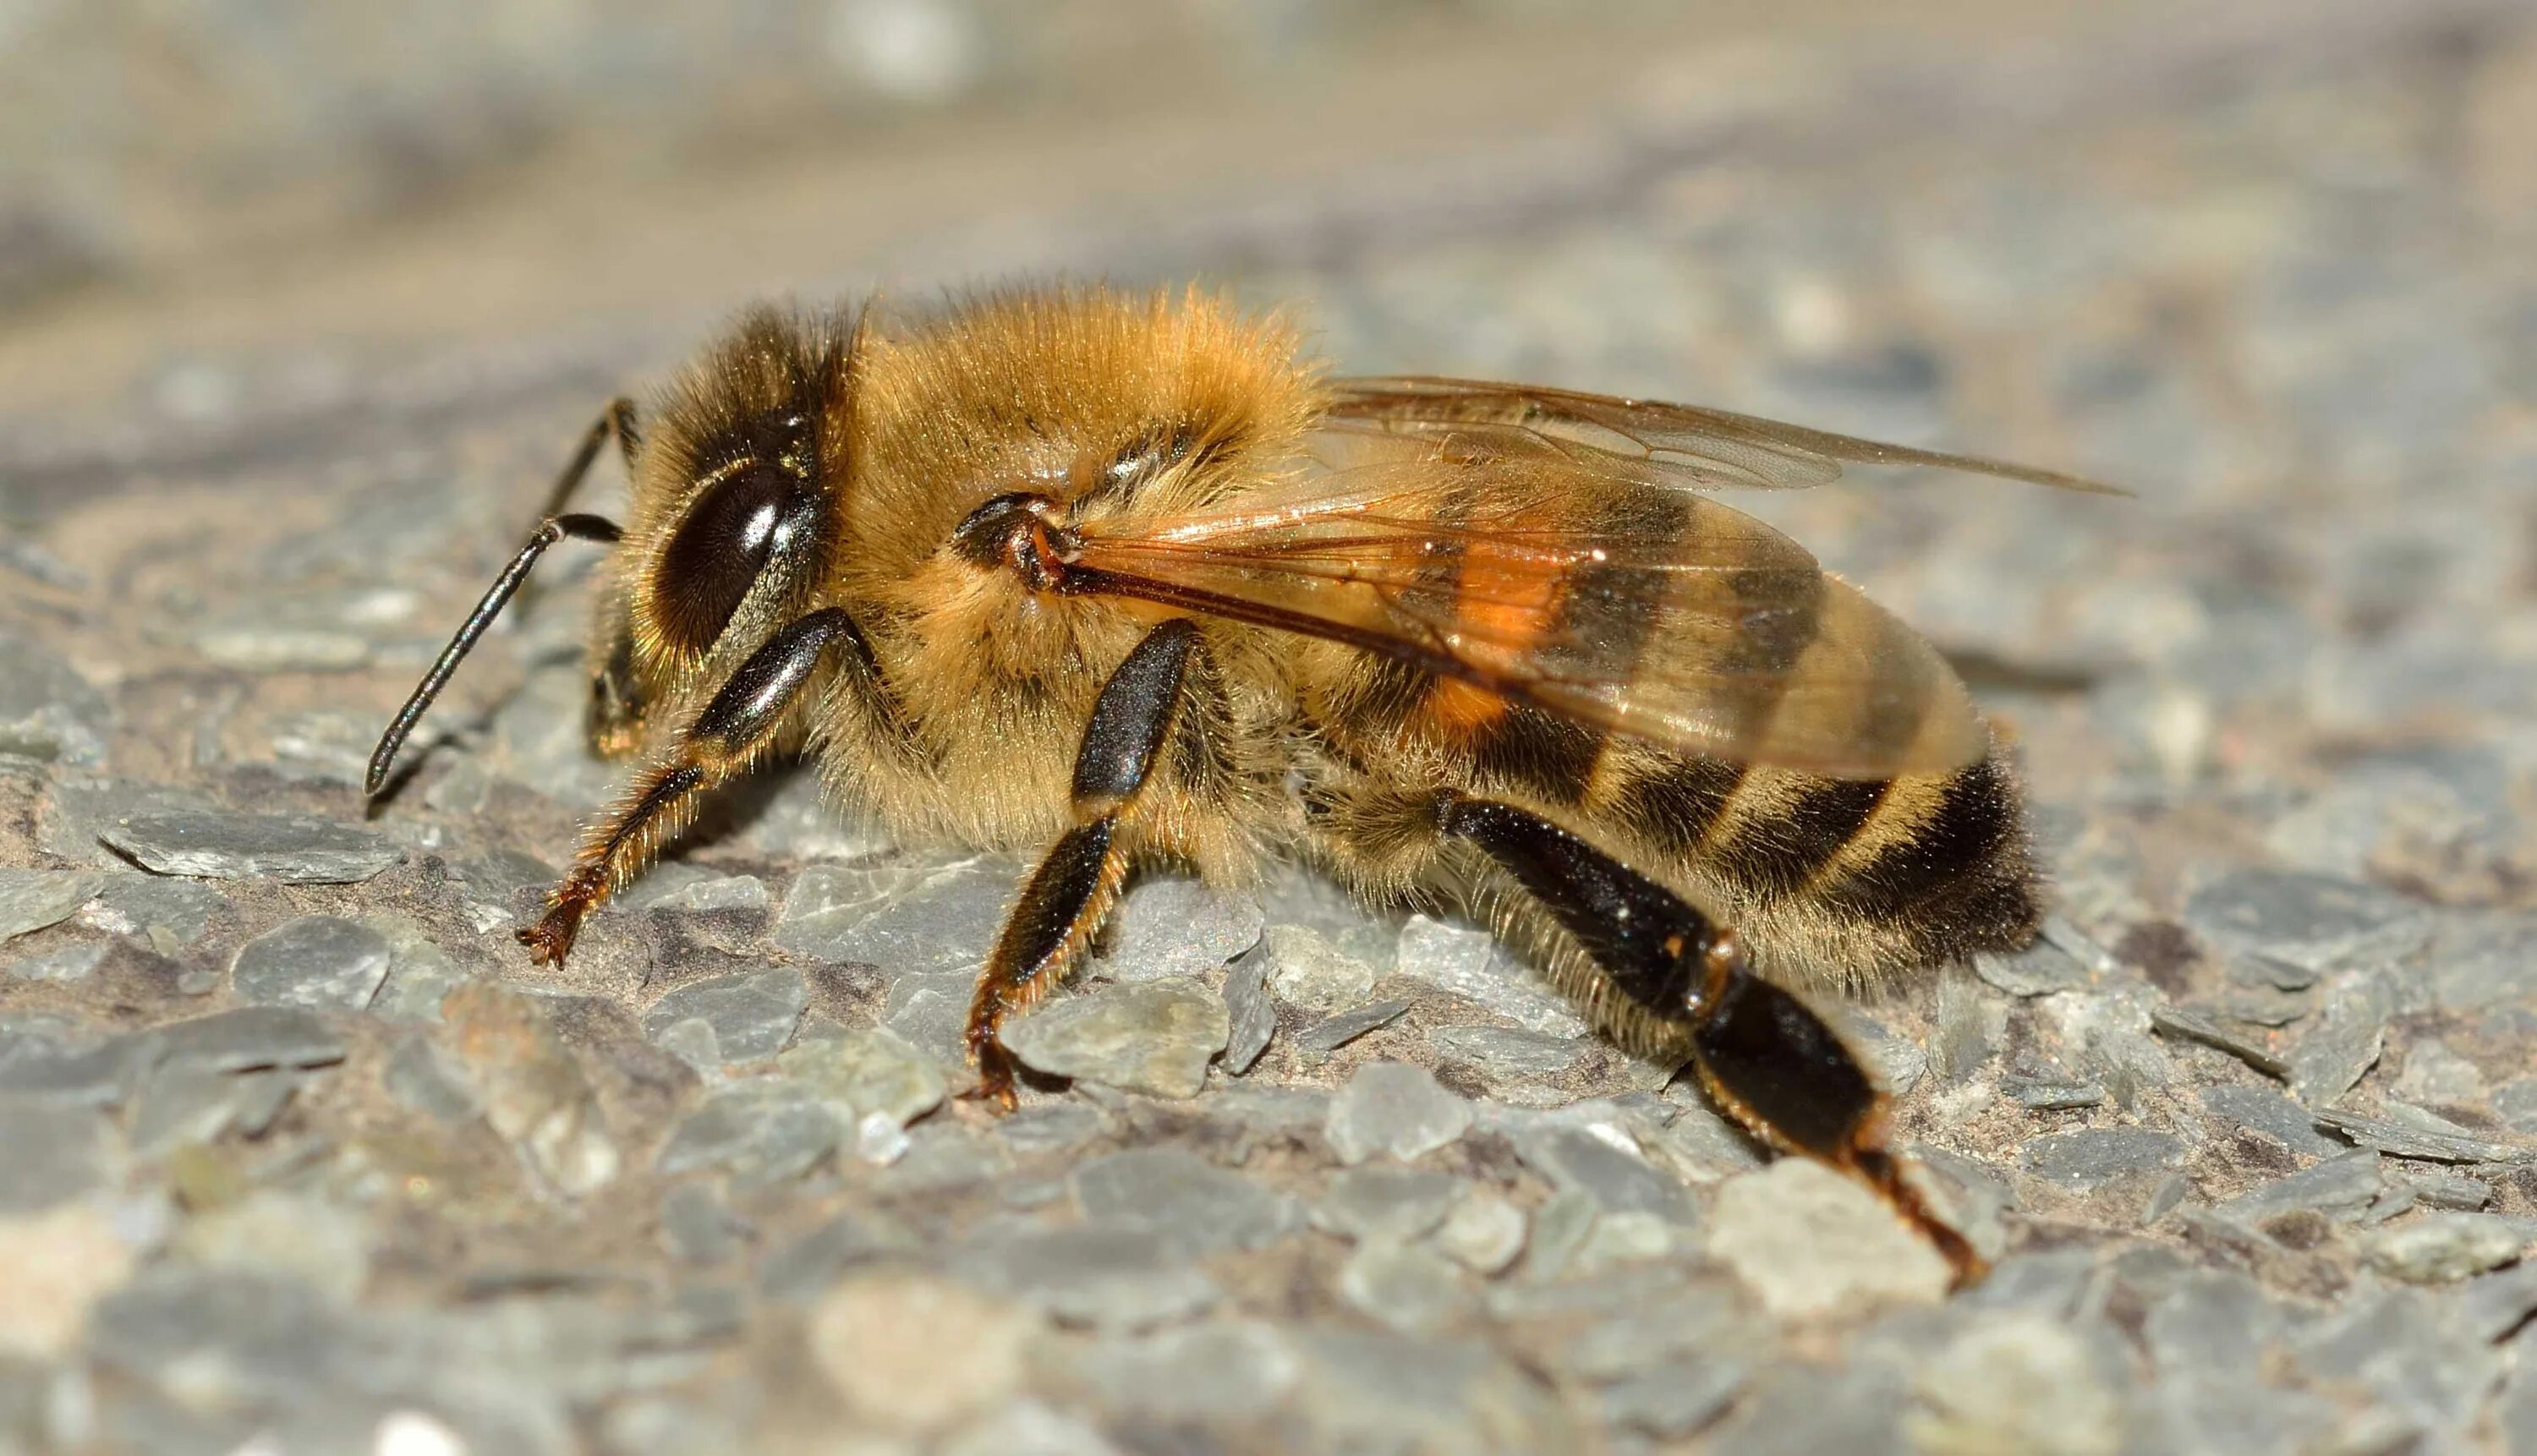 Домашние насекомые пчелы. Пчела АПИС Меллифера. Медоносная пчела APIS mellifera. Пчела мохнатоногая. Гималайская медоносная пчела.